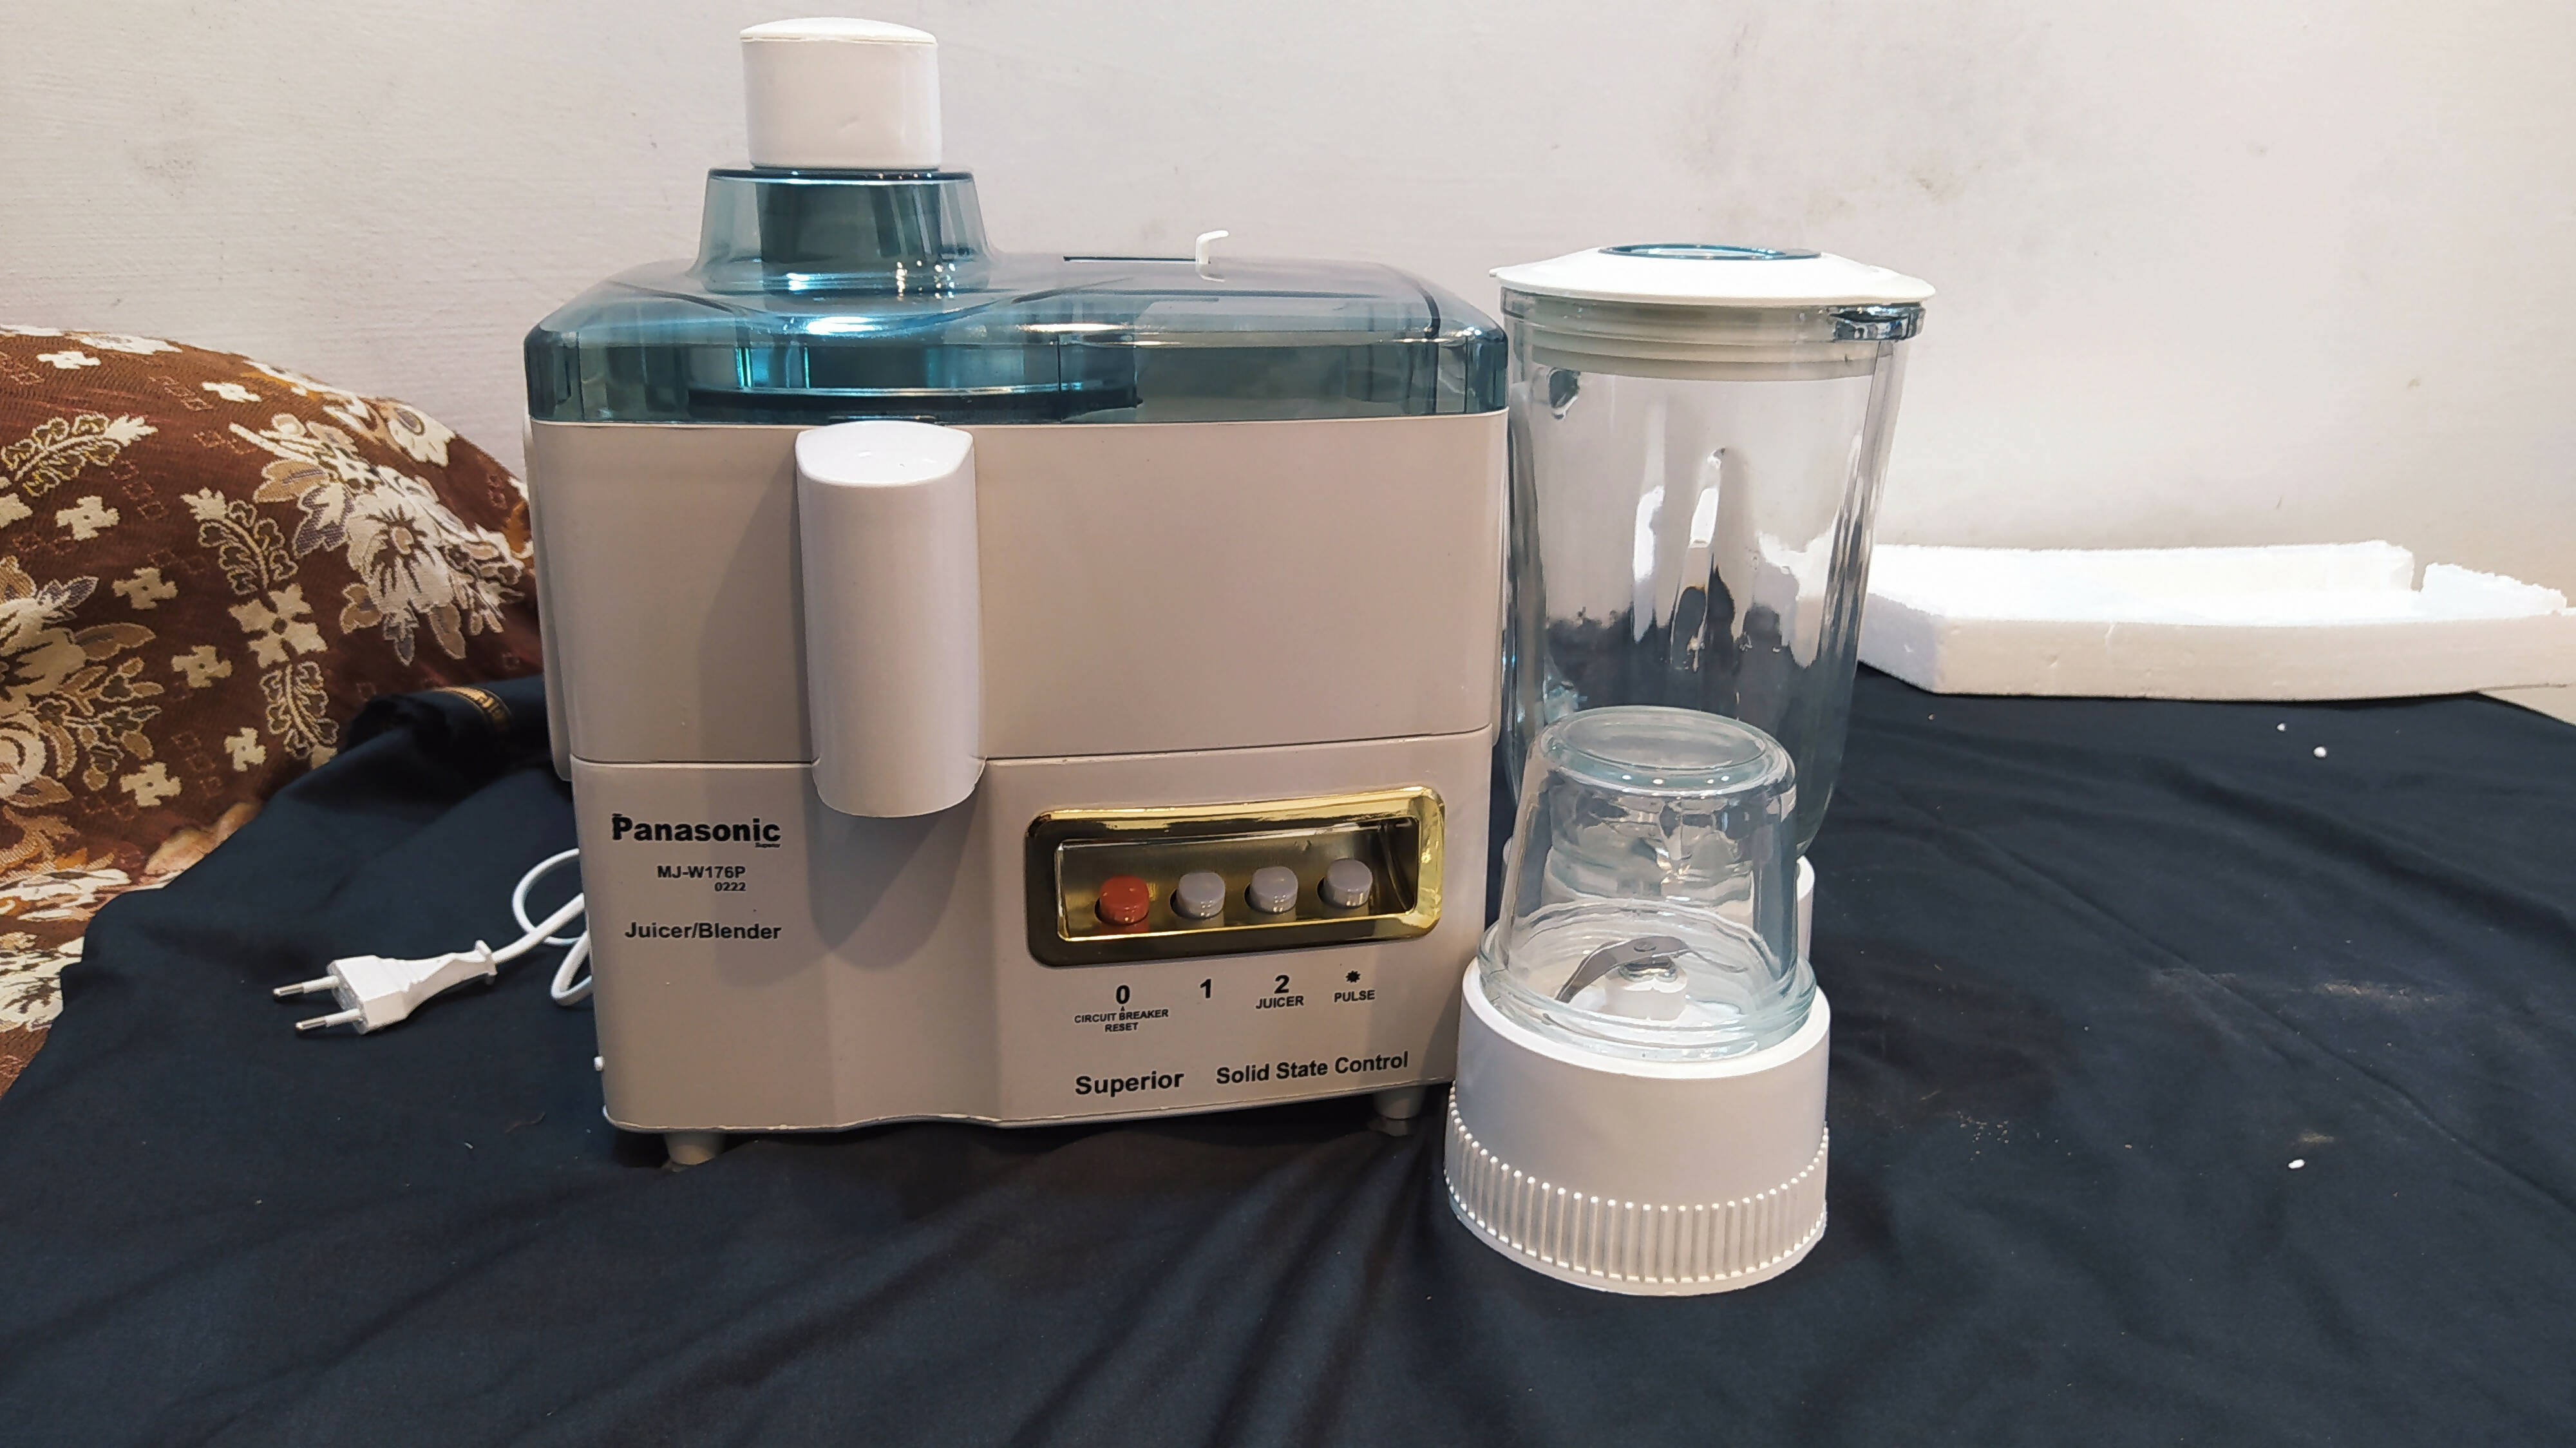 Panasonic juicer blender grinder(3in1)